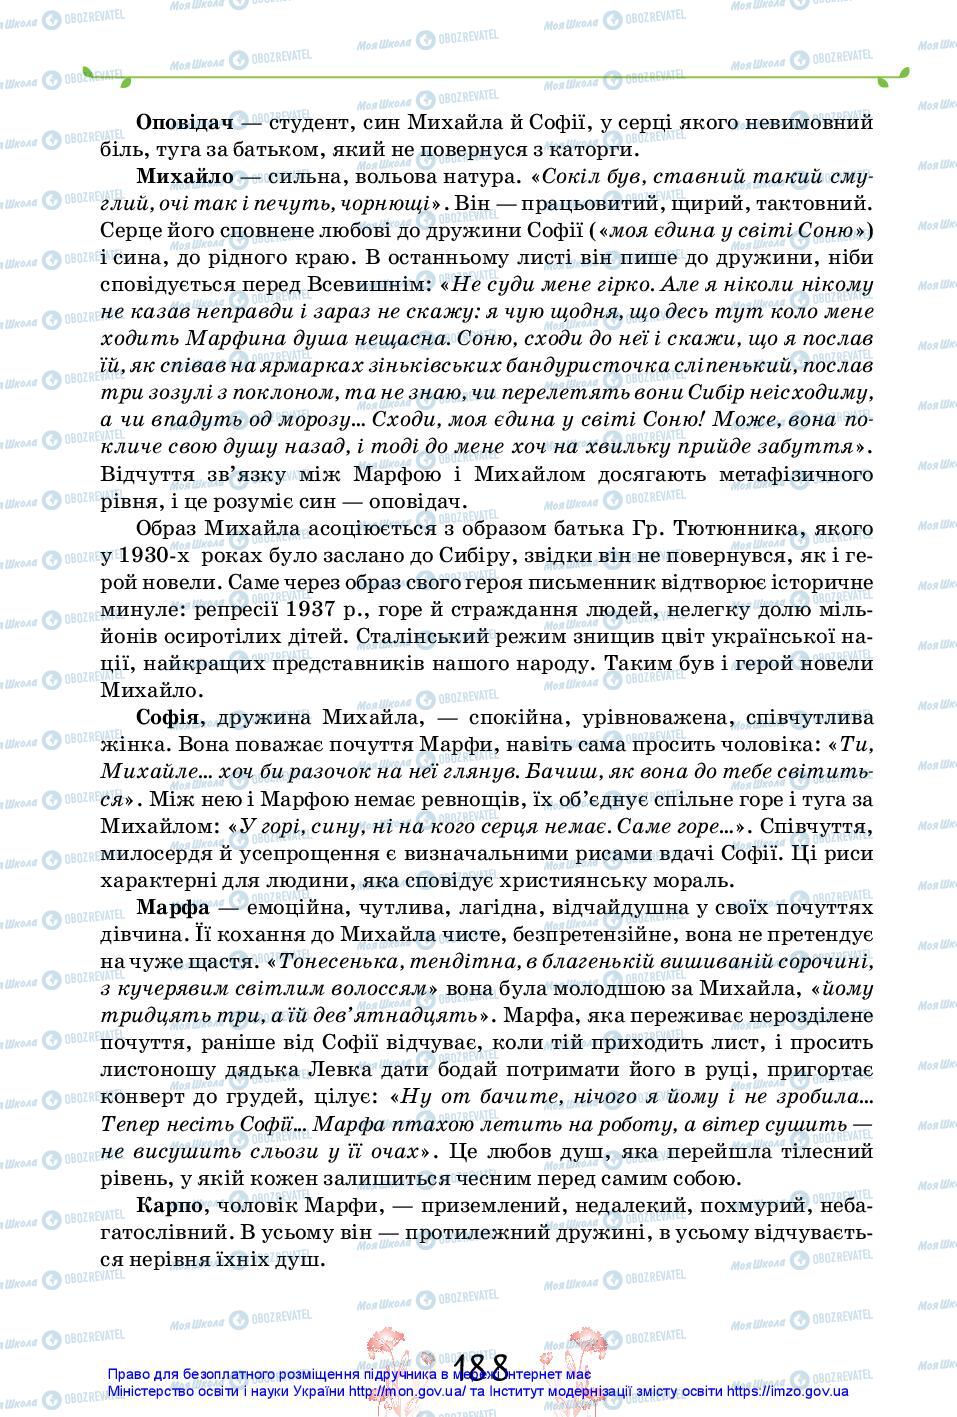 Учебники Укр лит 11 класс страница 188